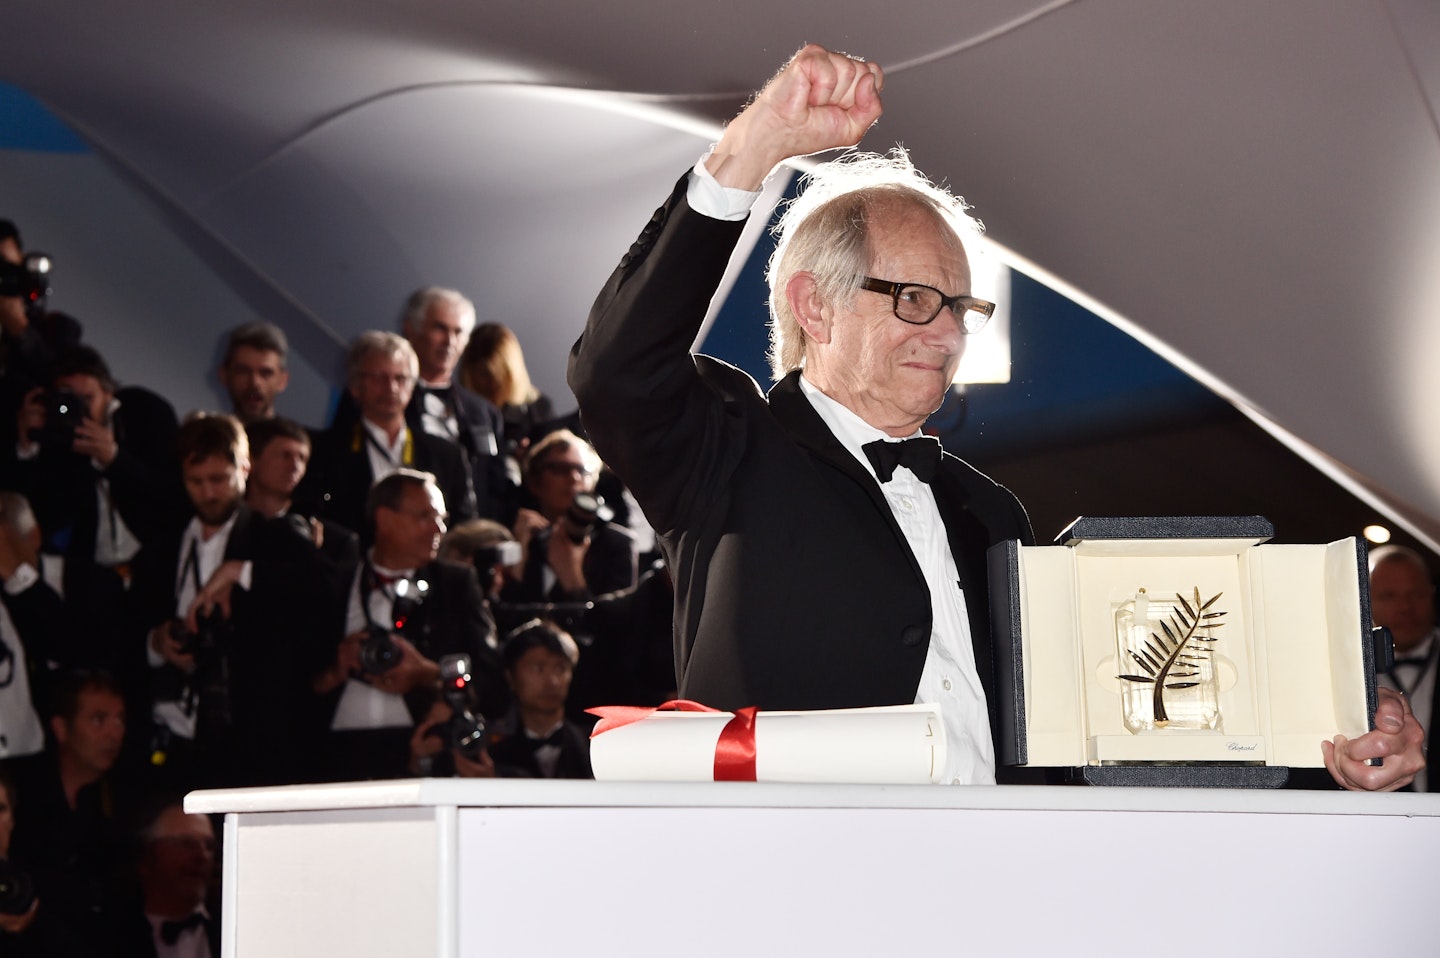 Ken Loach wins the Palme D'or, Cannes 2016